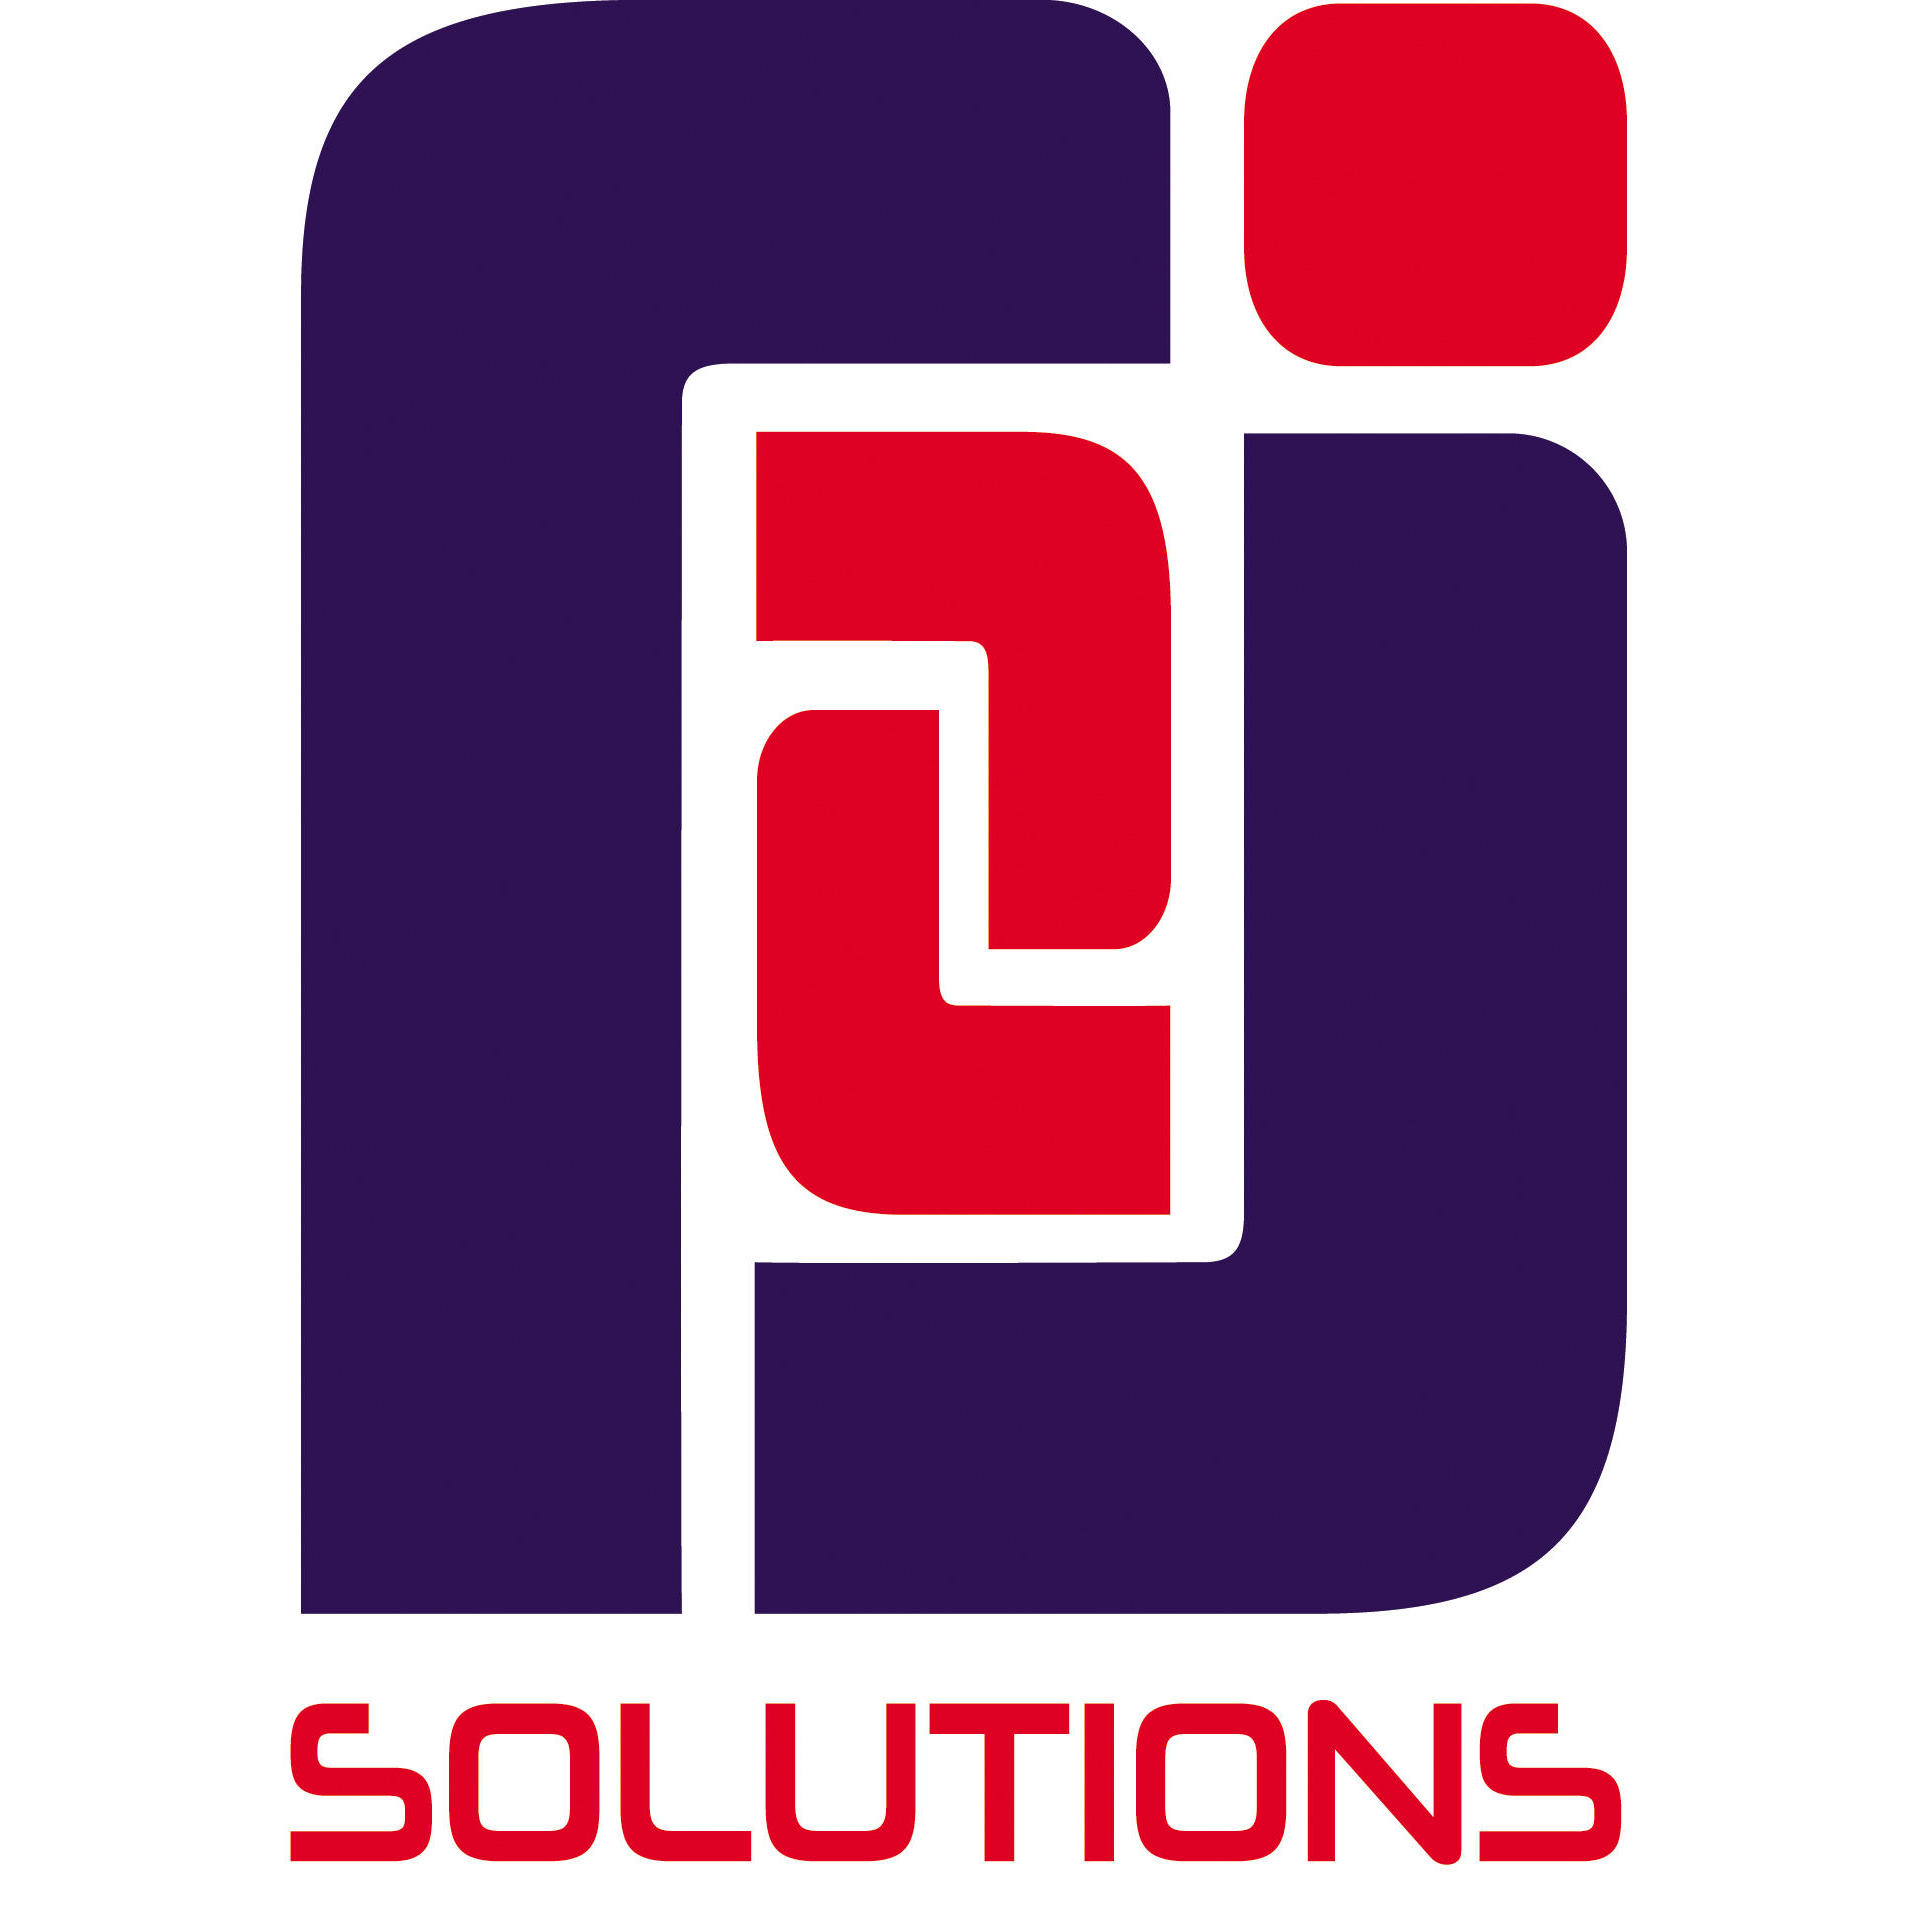 Rj2 Solutions Technologies Vigo S. L Vigo